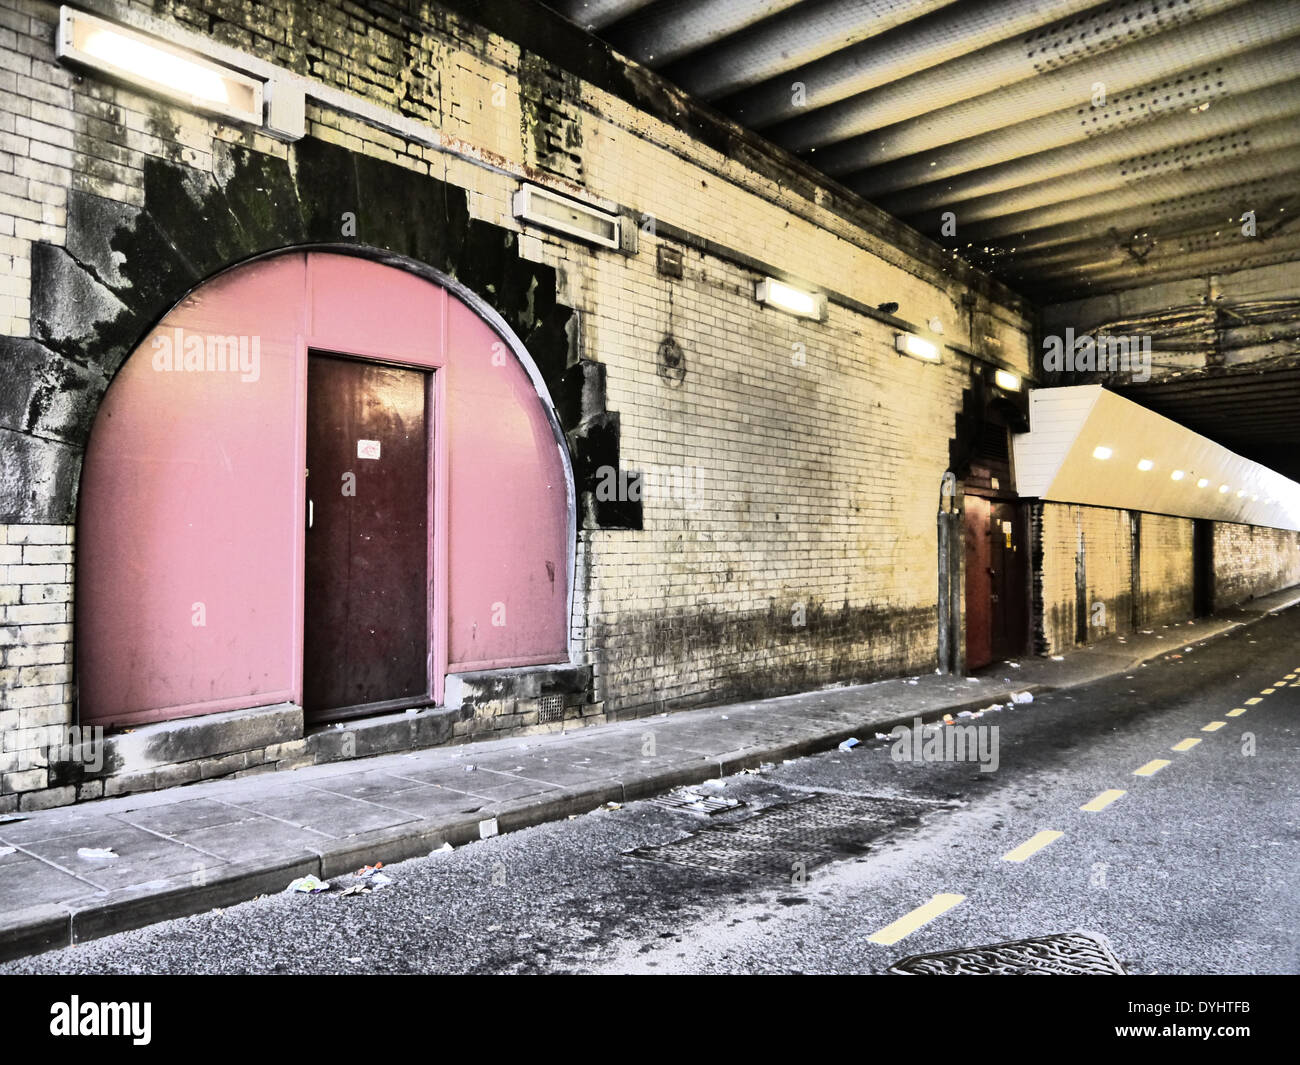 Création / image photographique artistique de porte voûtée, tunnel routier / / passage souterrain, Newcastle upon Tyne, England, UK Banque D'Images